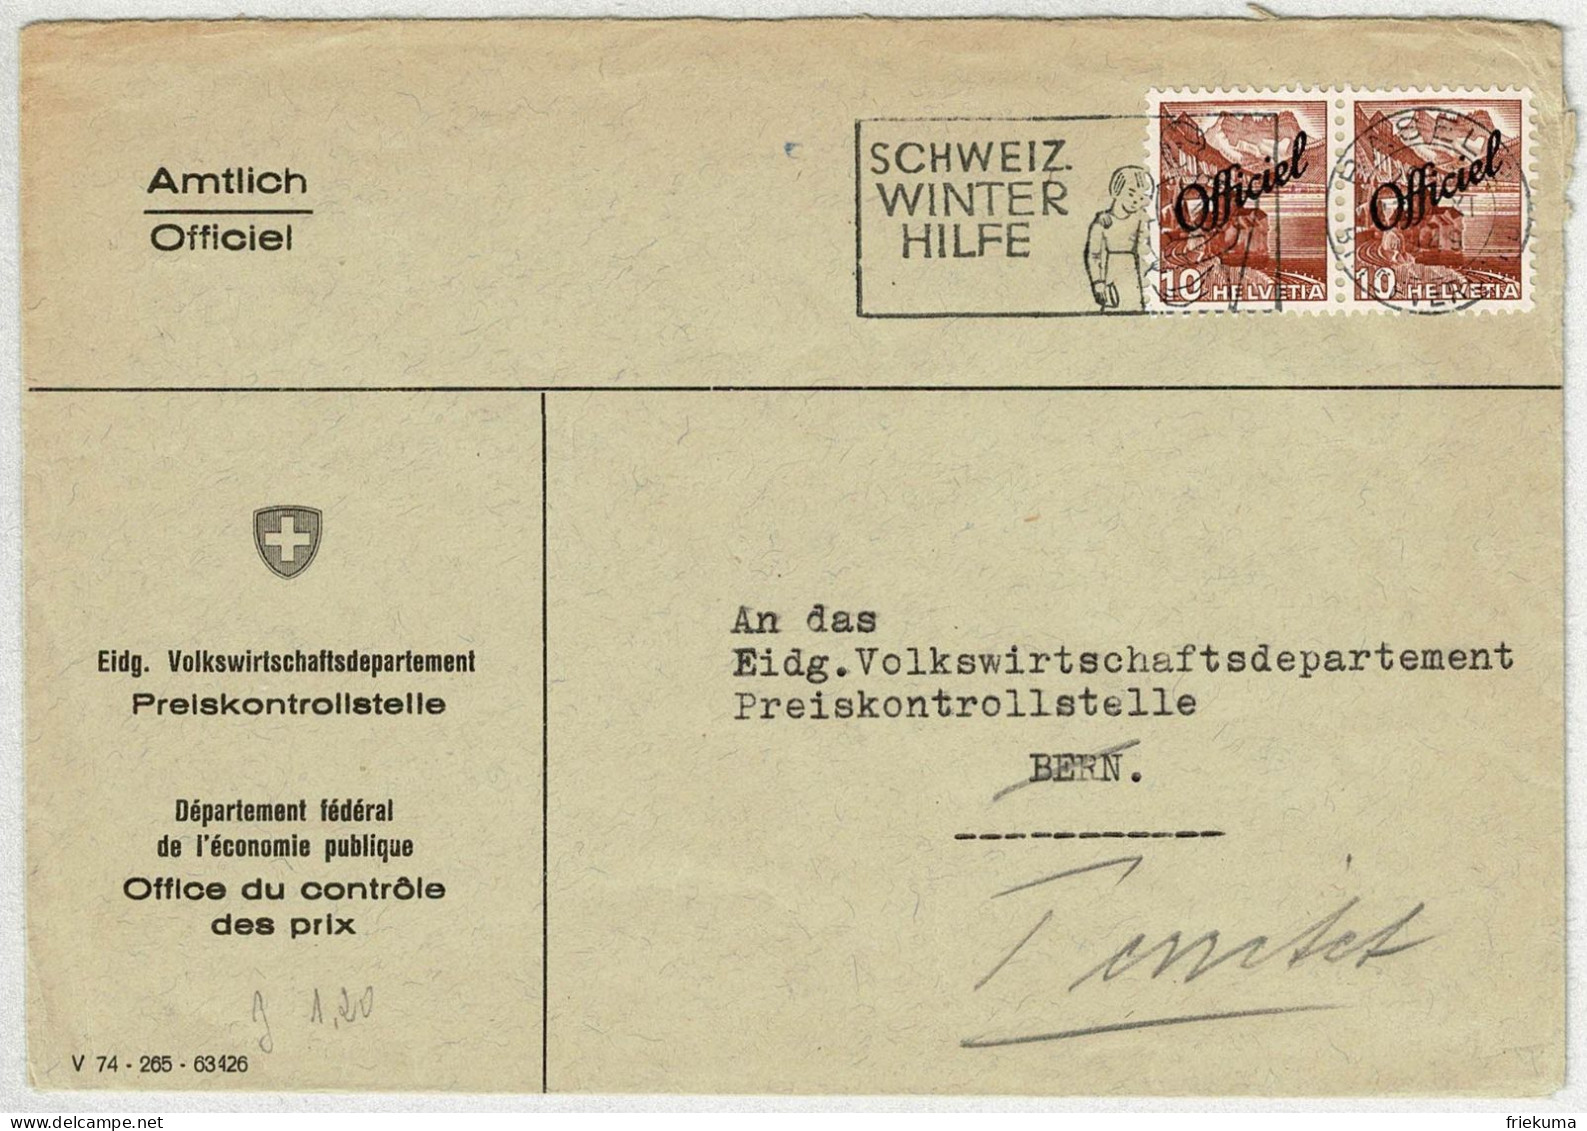 Schweiz 1949, Brief Amtlich Basel - Bern, Nachsendung Territet, Neue Landschaftsbilder Officiel, Preiskontrollstelle - Officials